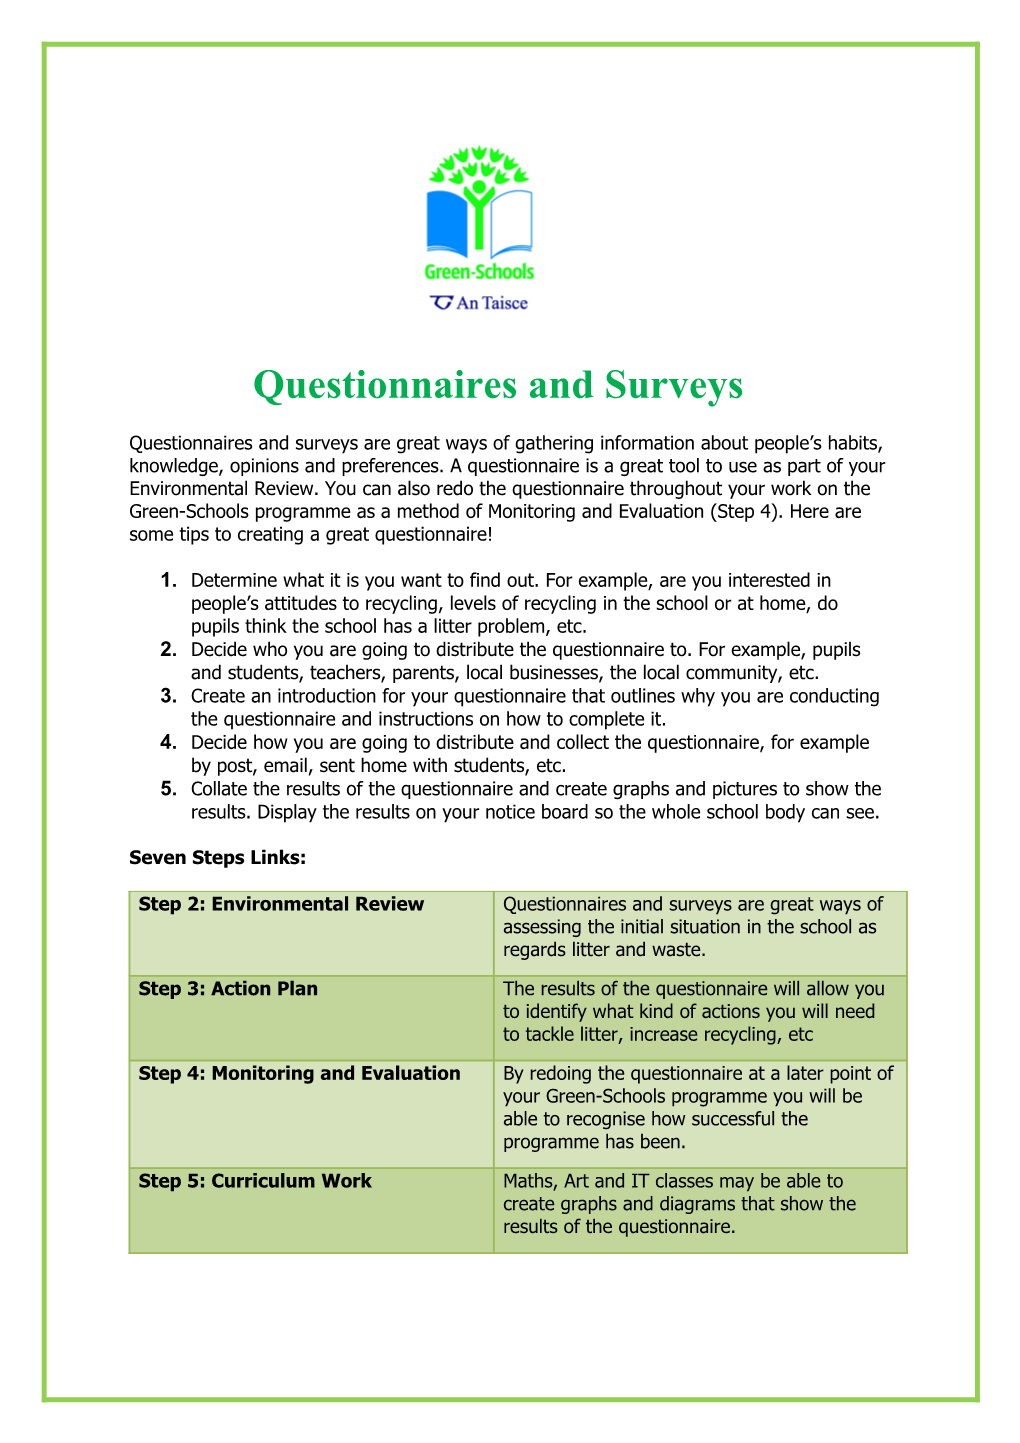 Questionnaires and Surveys